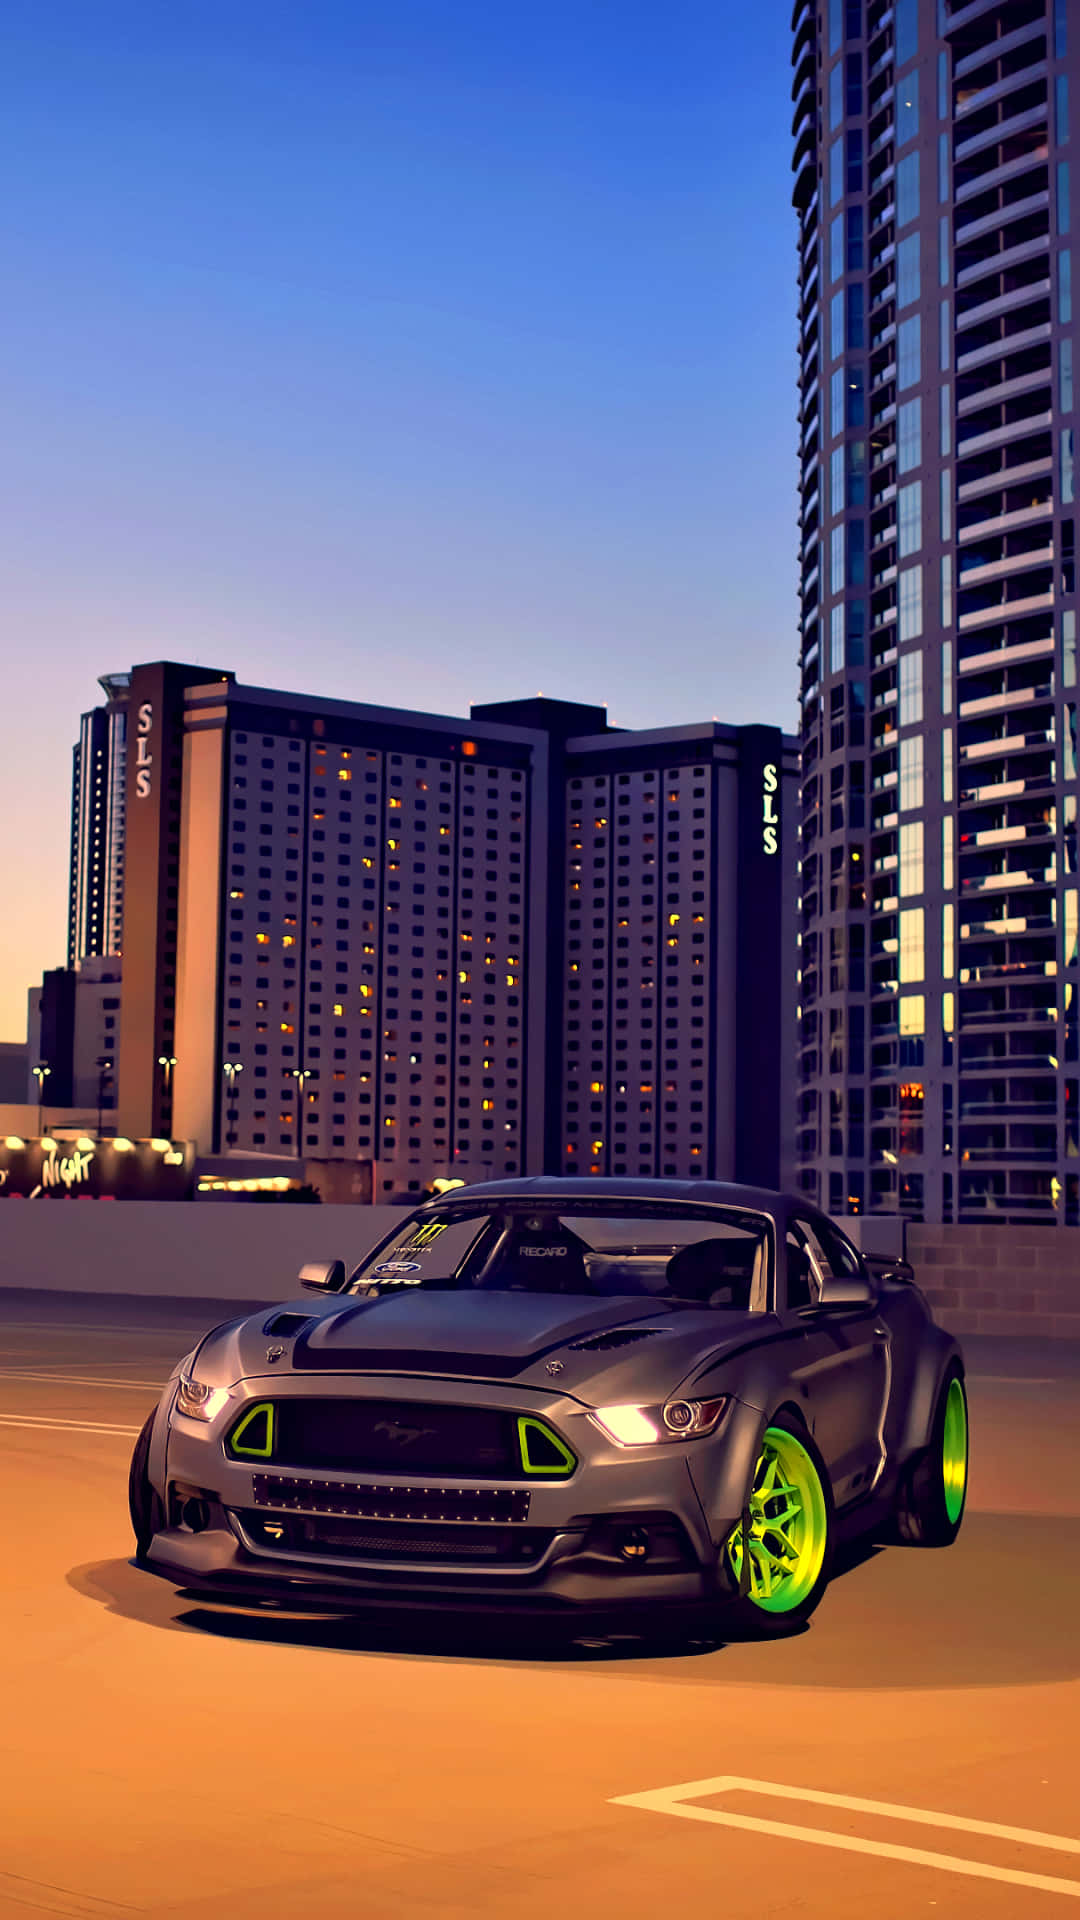 2015rtr Ford Mustang Under Skymningstiden. Wallpaper